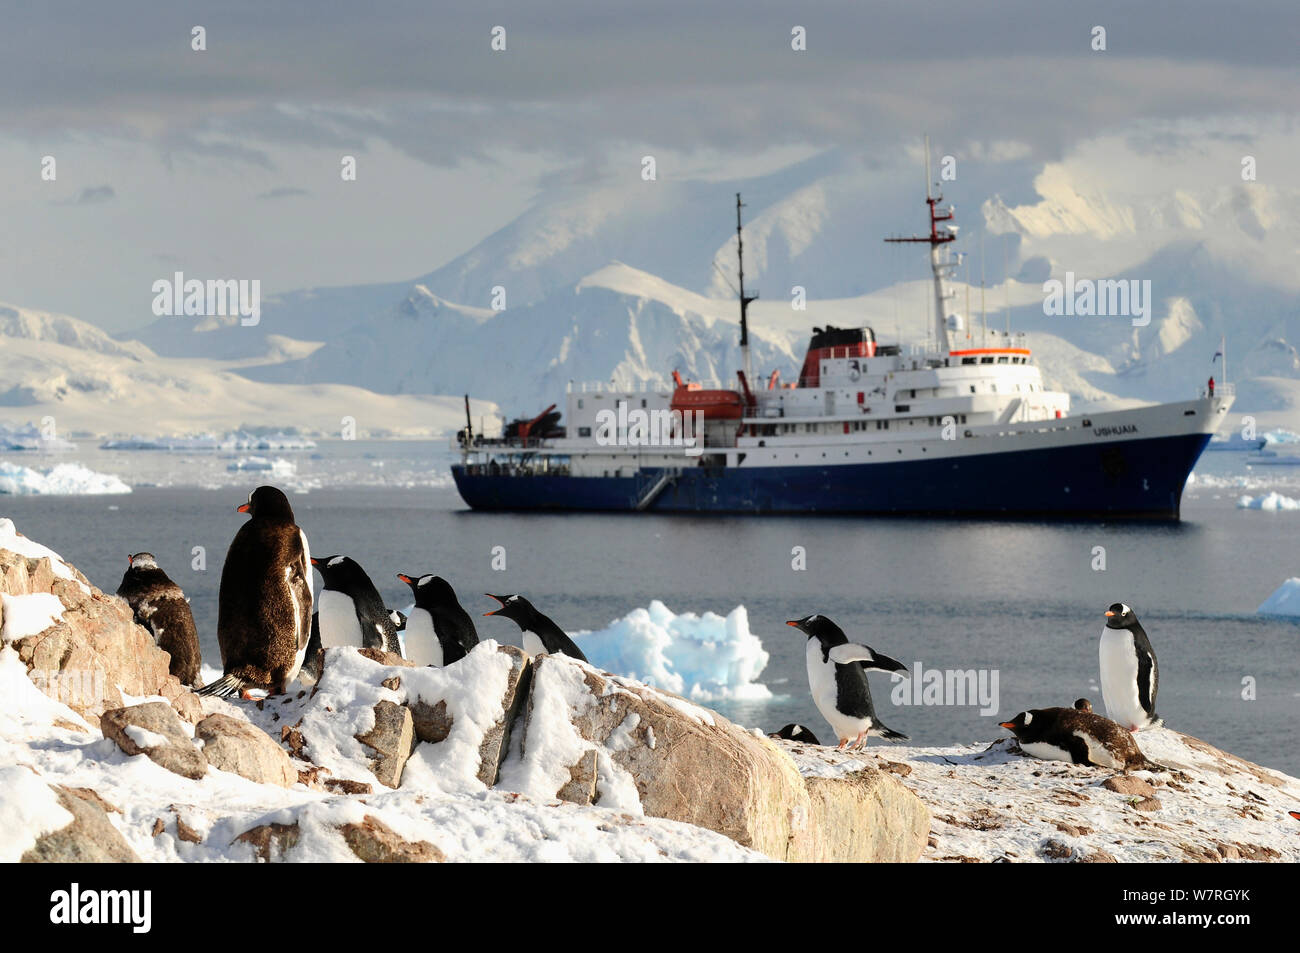 Manchots papous (Pygoscelis papua) et le paquebot de croisière antarctique Ushuaia 'MV' dans Neko Harbour, baie Andvord. La péninsule antarctique, l'Antarctique. Banque D'Images